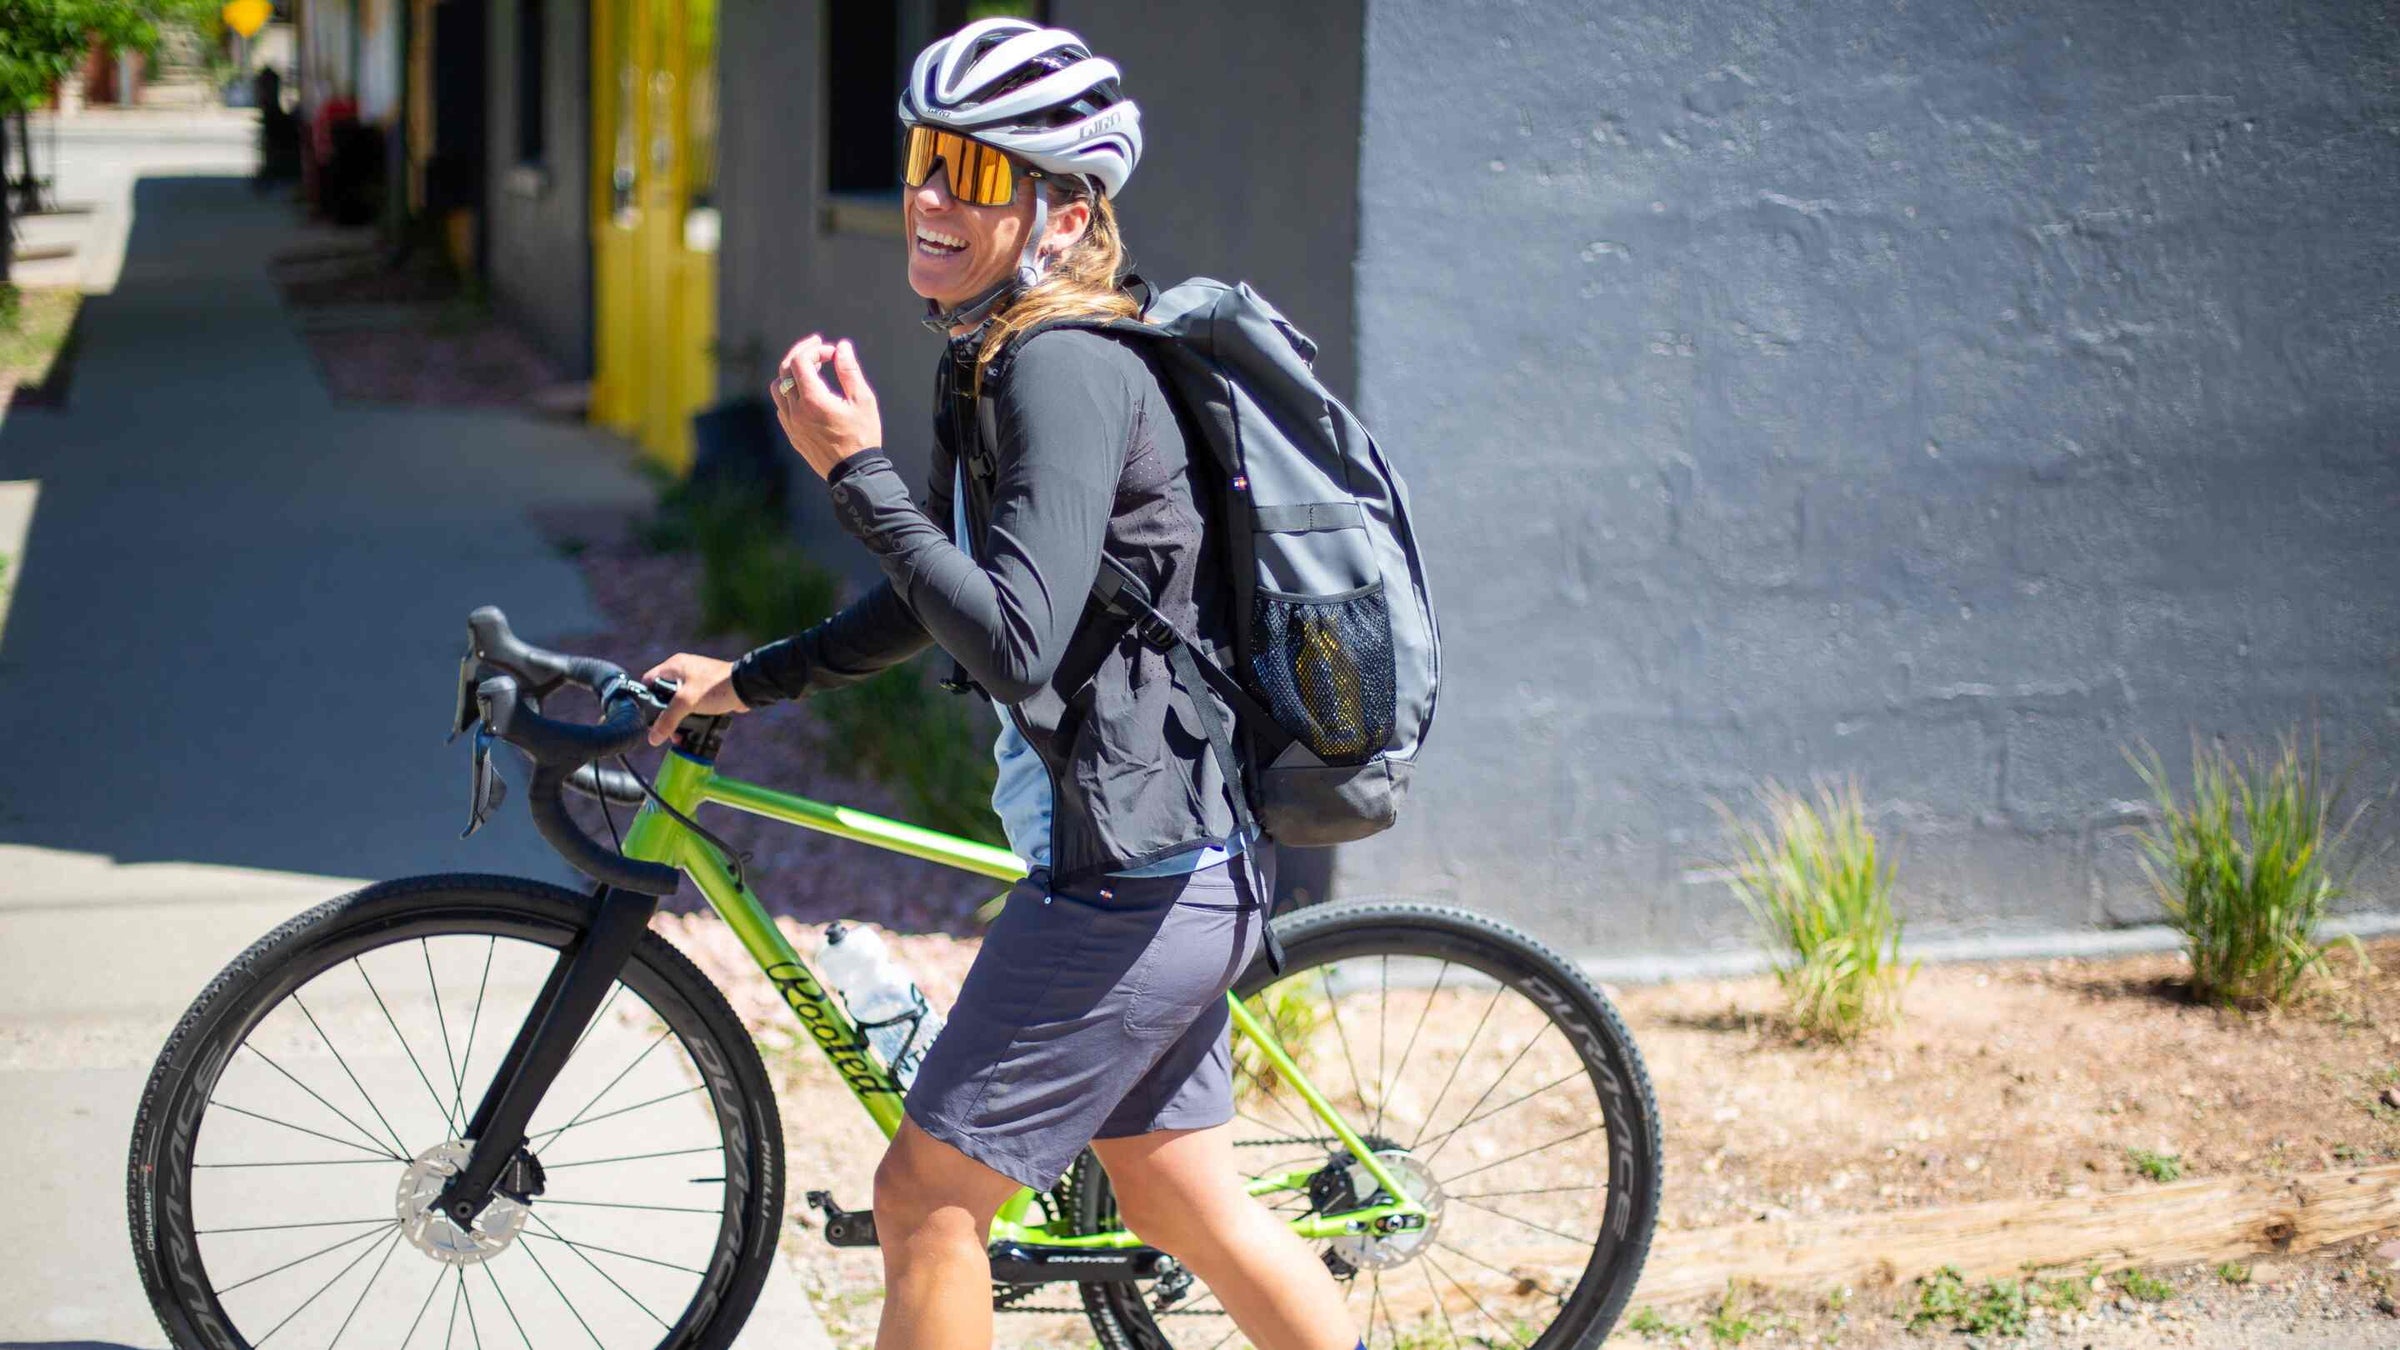 primalblends Commuter Bike Clothing for Women